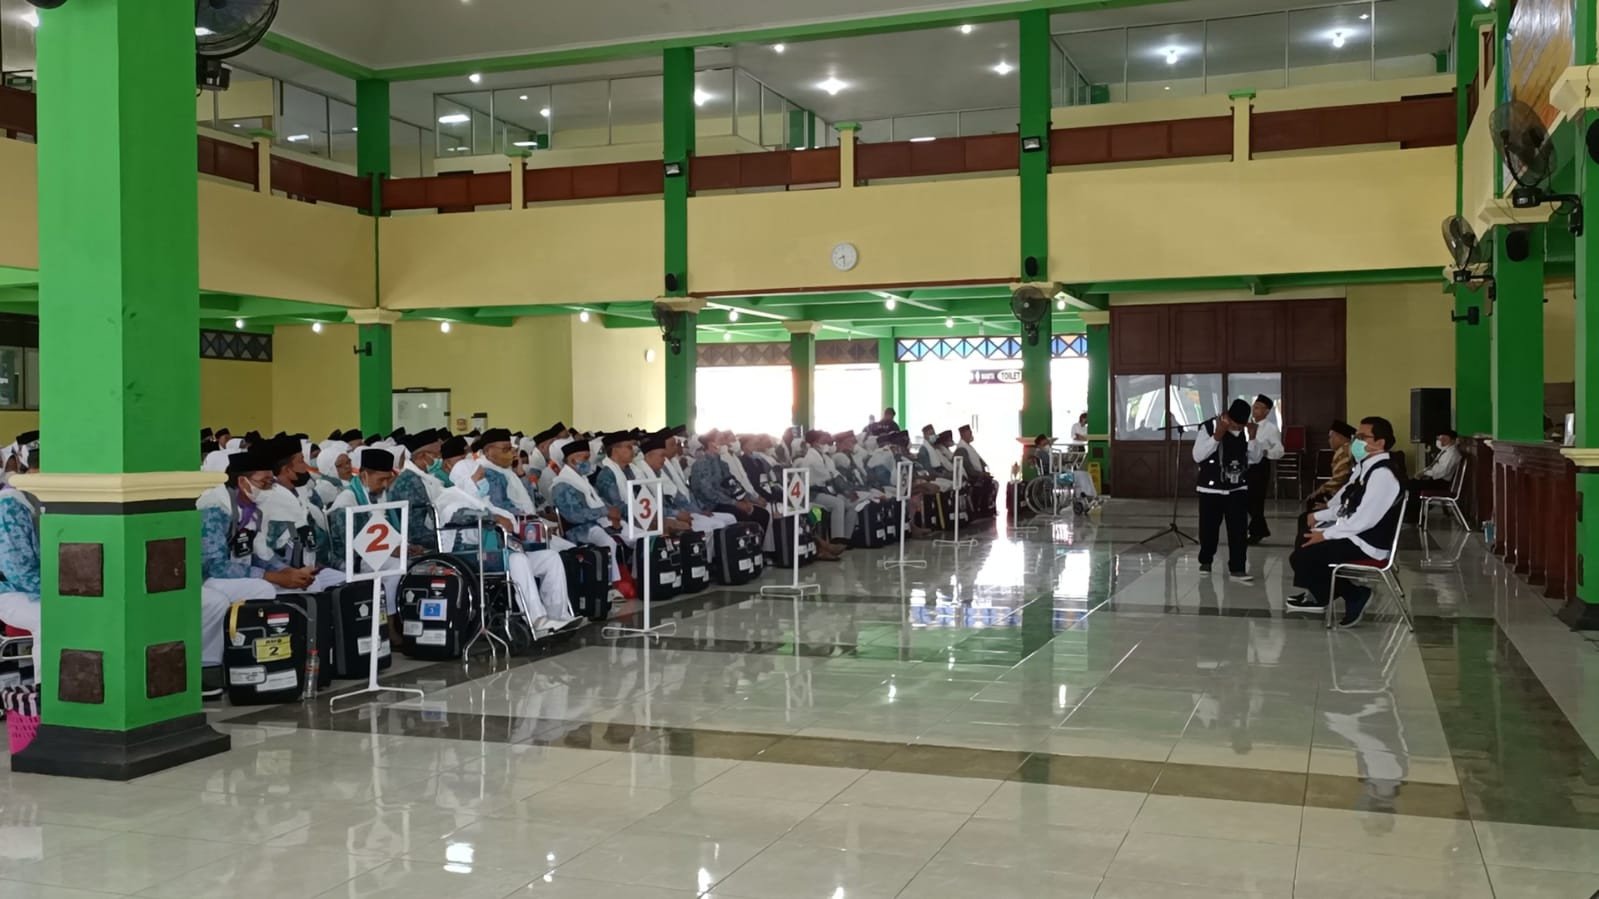 Calhaj Jawa Tengah Kloter 1 Tiba di Donohudan, Perhatikan Tata Tertib di Sana